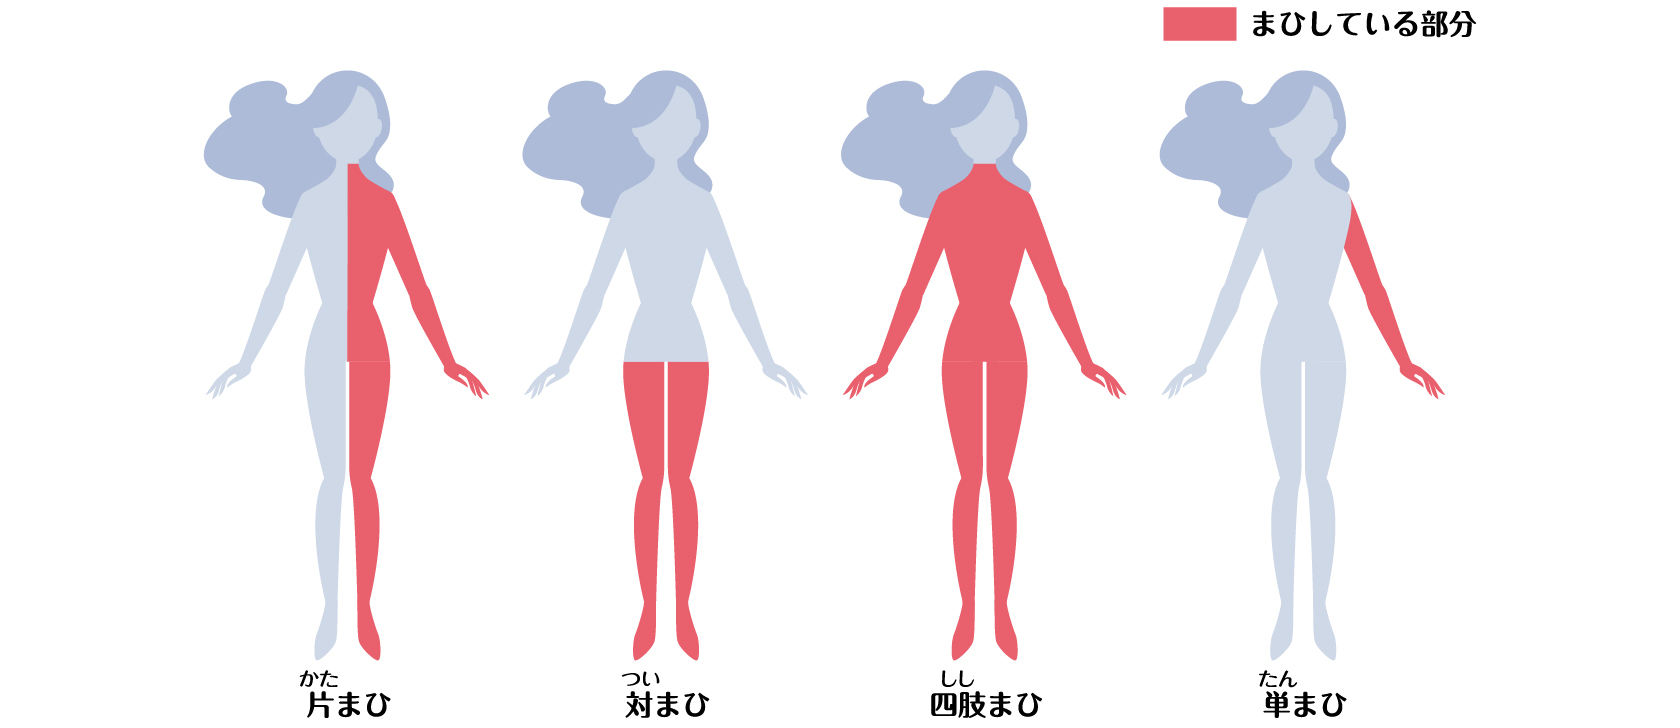 片まひ、対まひ、四肢まひ、単まひの発症部位のイメージ図。